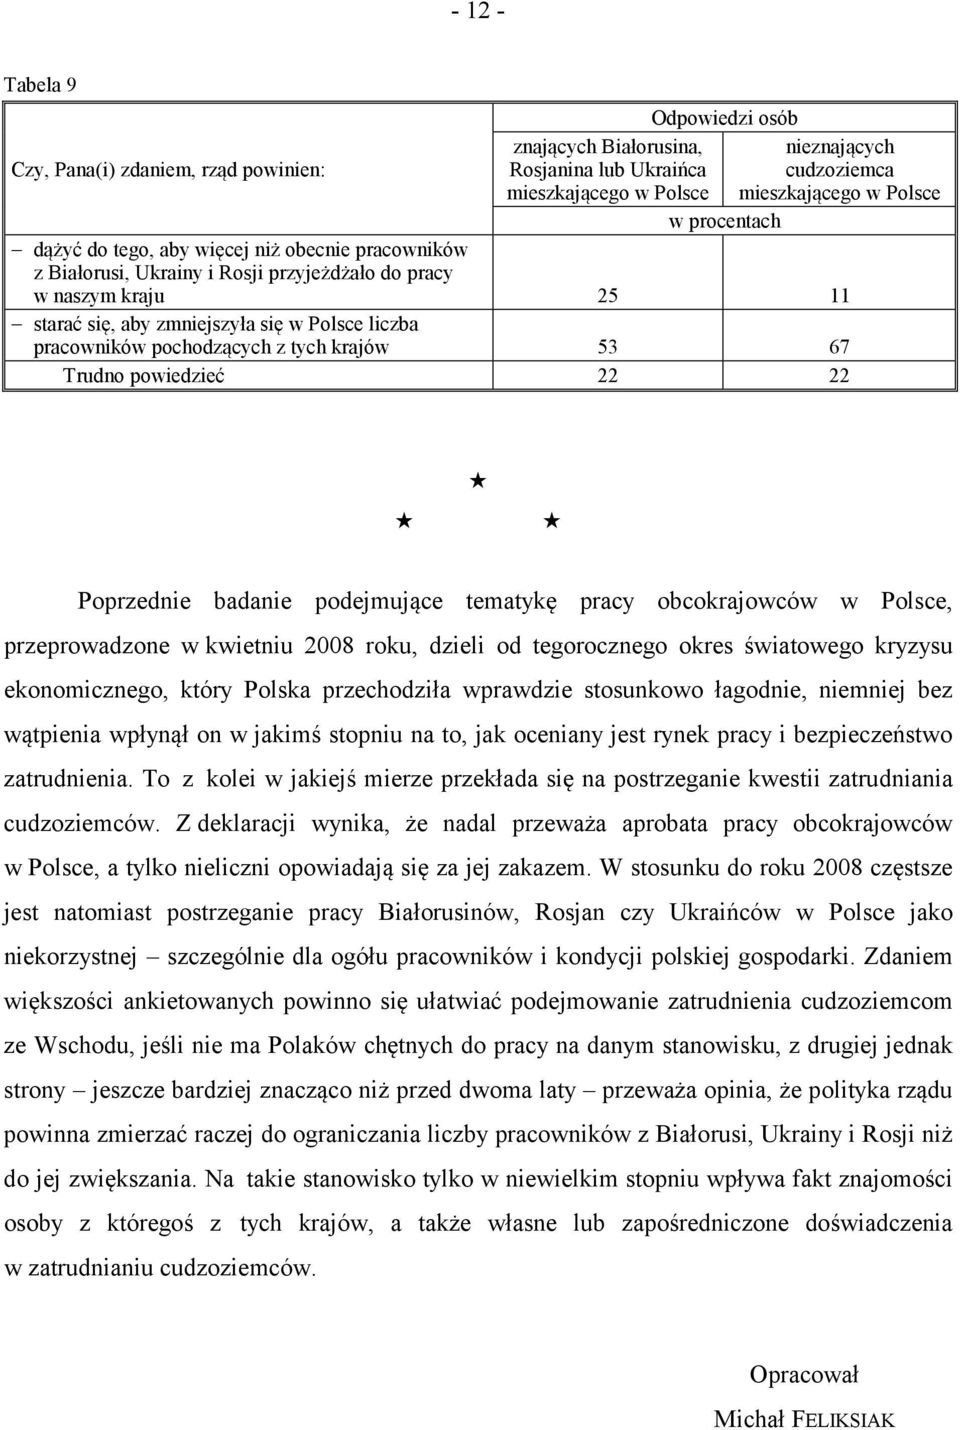 badanie podejmujące tematykę pracy obcokrajowców w Polsce, przeprowadzone w kwietniu 2008 roku, dzieli od tegorocznego okres światowego kryzysu ekonomicznego, który Polska przechodziła wprawdzie